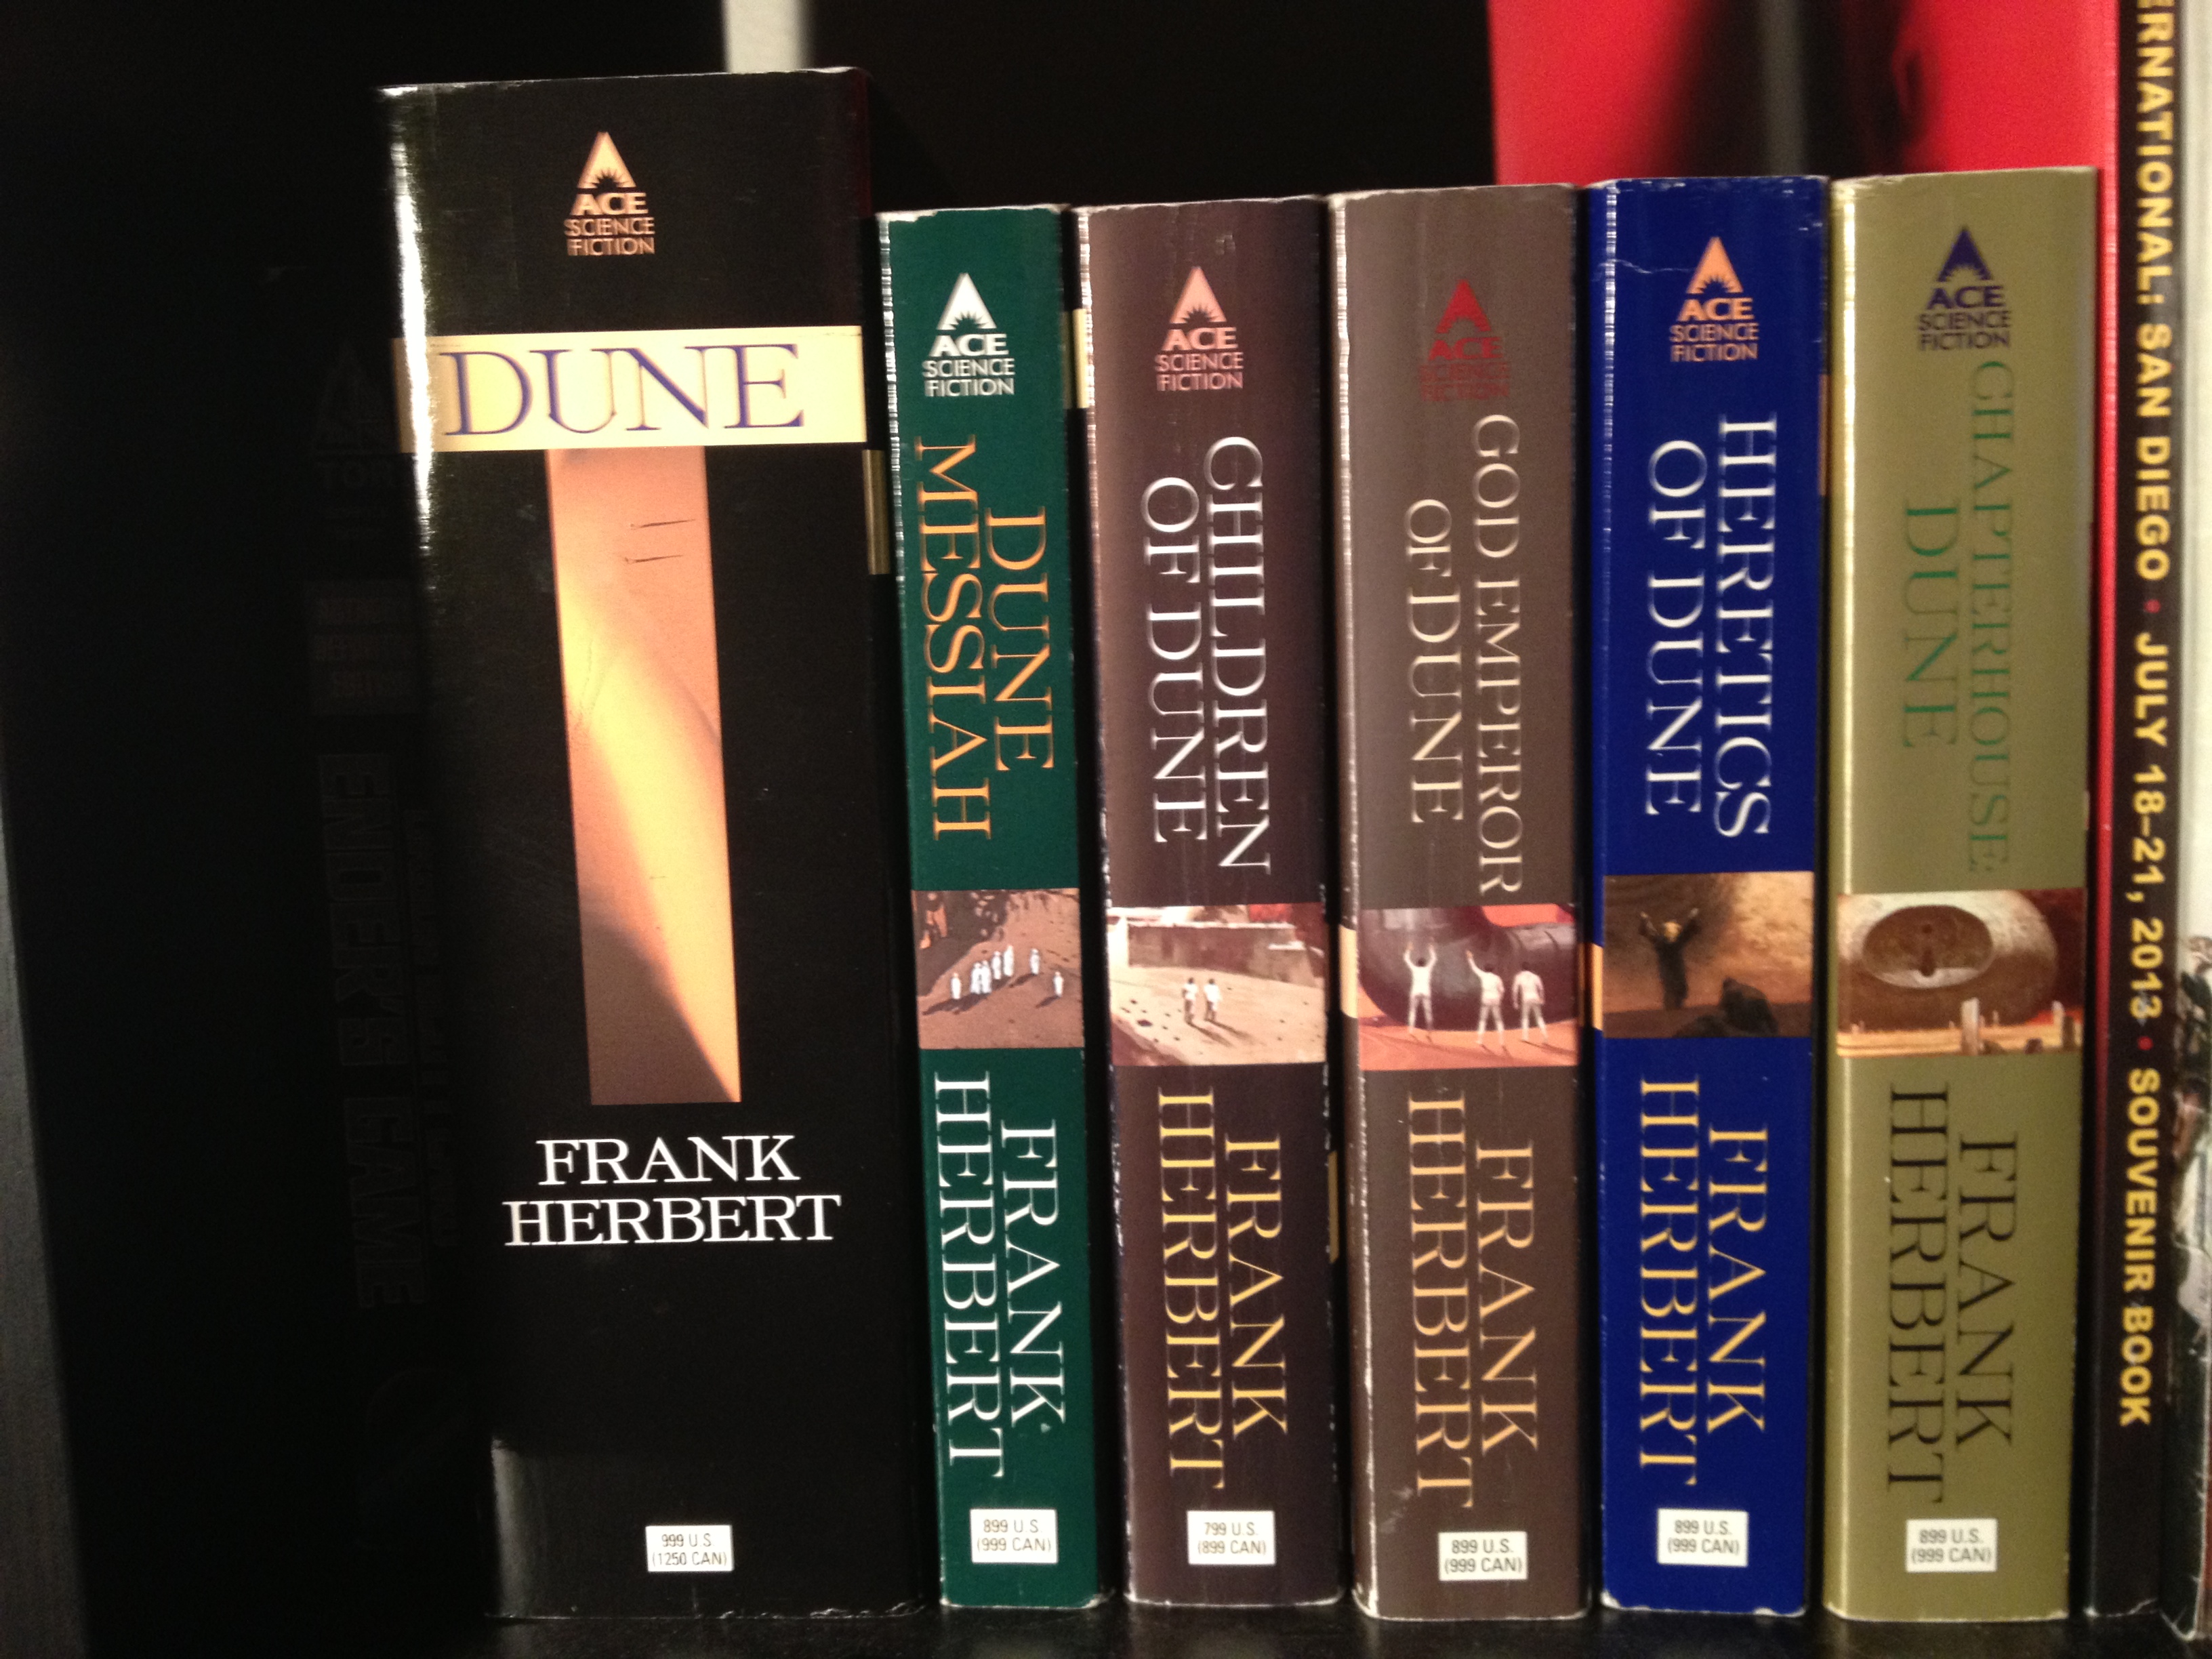 سلسلة روايات الكثبان للكاتب فرانك هربرت